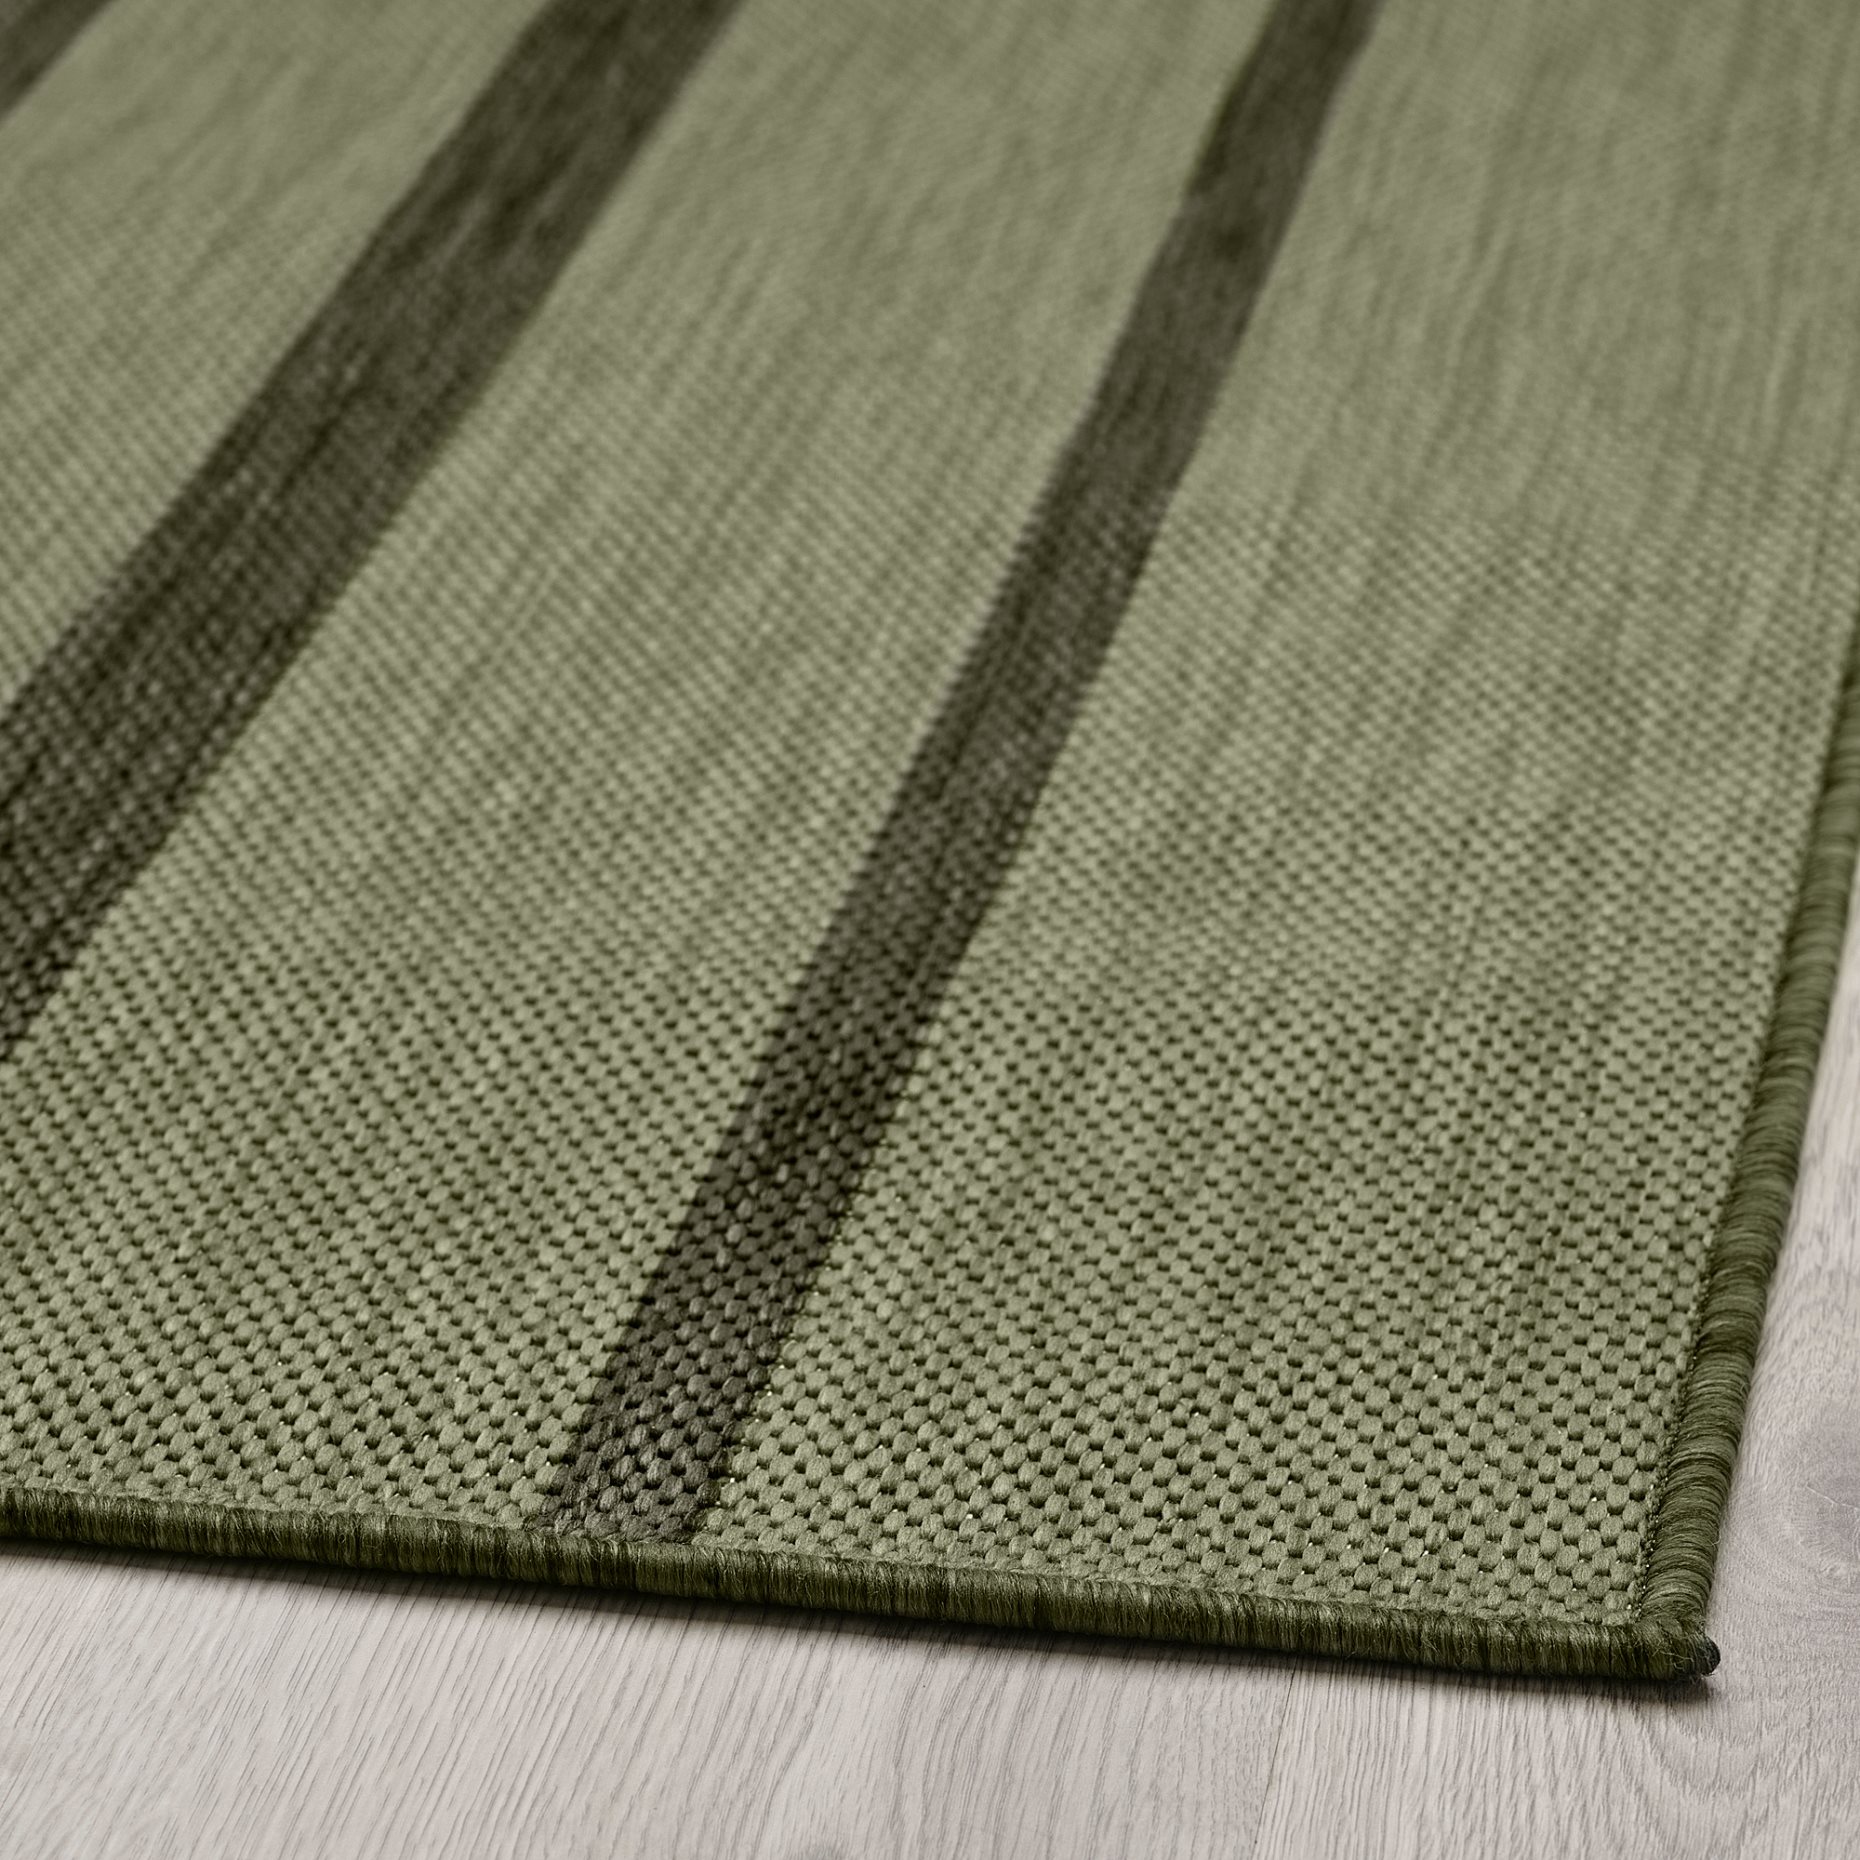 KANTSTOLPE, килим гладко тъкан, на откр/закрито, 305.693.21